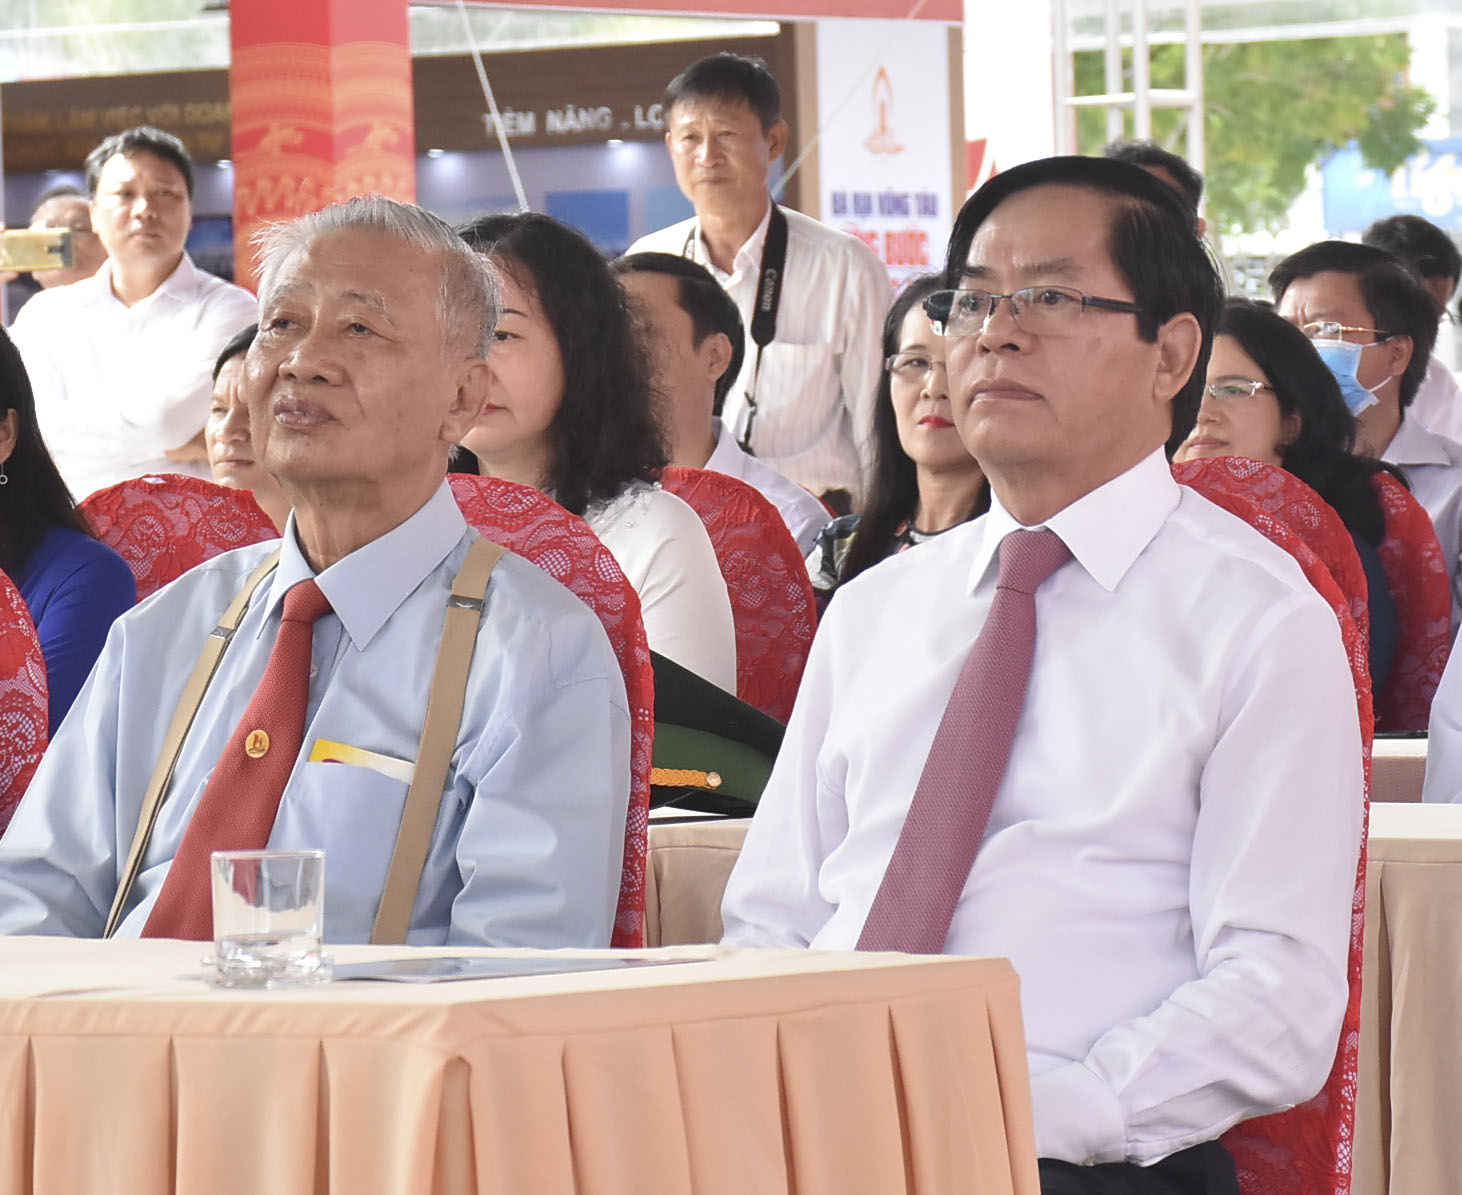 Ông Phạm Viết Thanh (bên phải), Ủy viên Trung ương Đảng, Bí thư Tỉnh ủy và ông Trần Văn Khánh, nguyên Bí thư Tỉnh ủy dự buổi triển lãm.